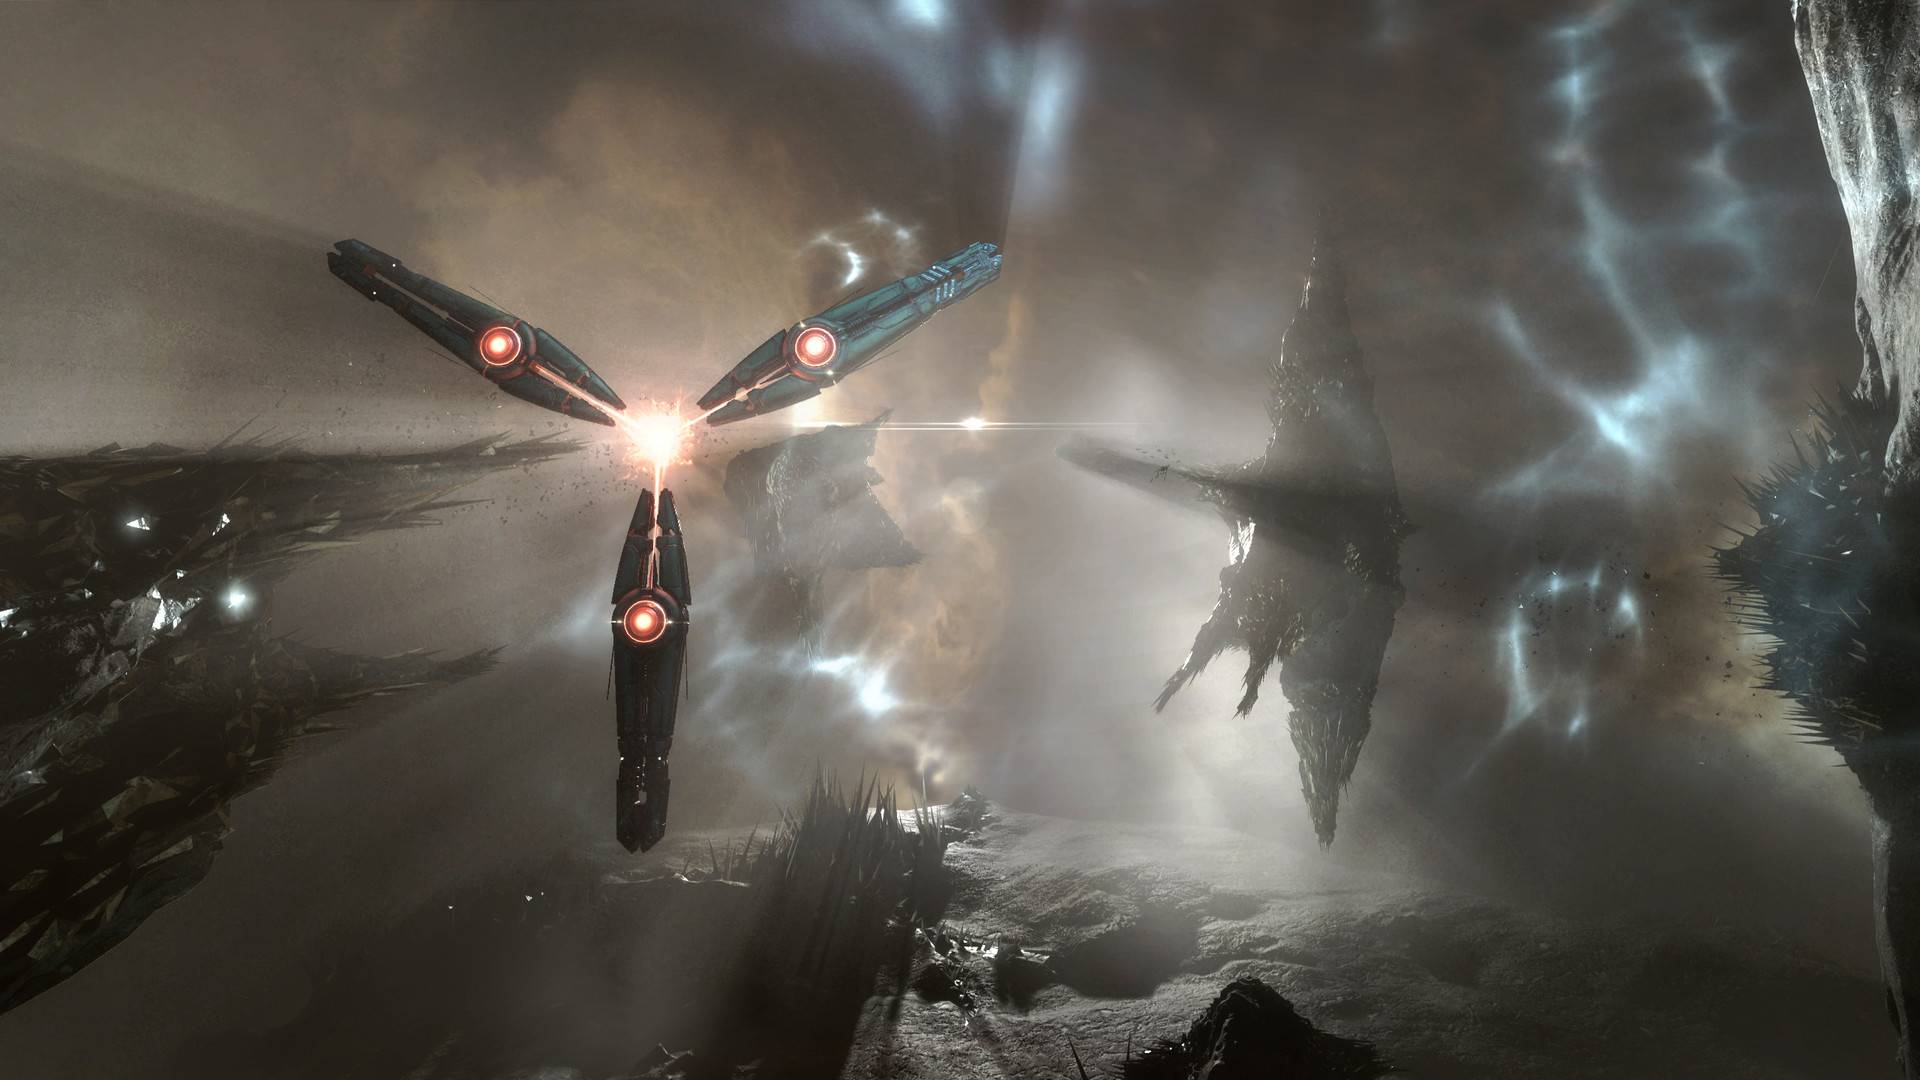 En iyi MMORPG Oyunları: Eve Online. Resim, uzayda uçan diğer dünya gemilerini gösterir